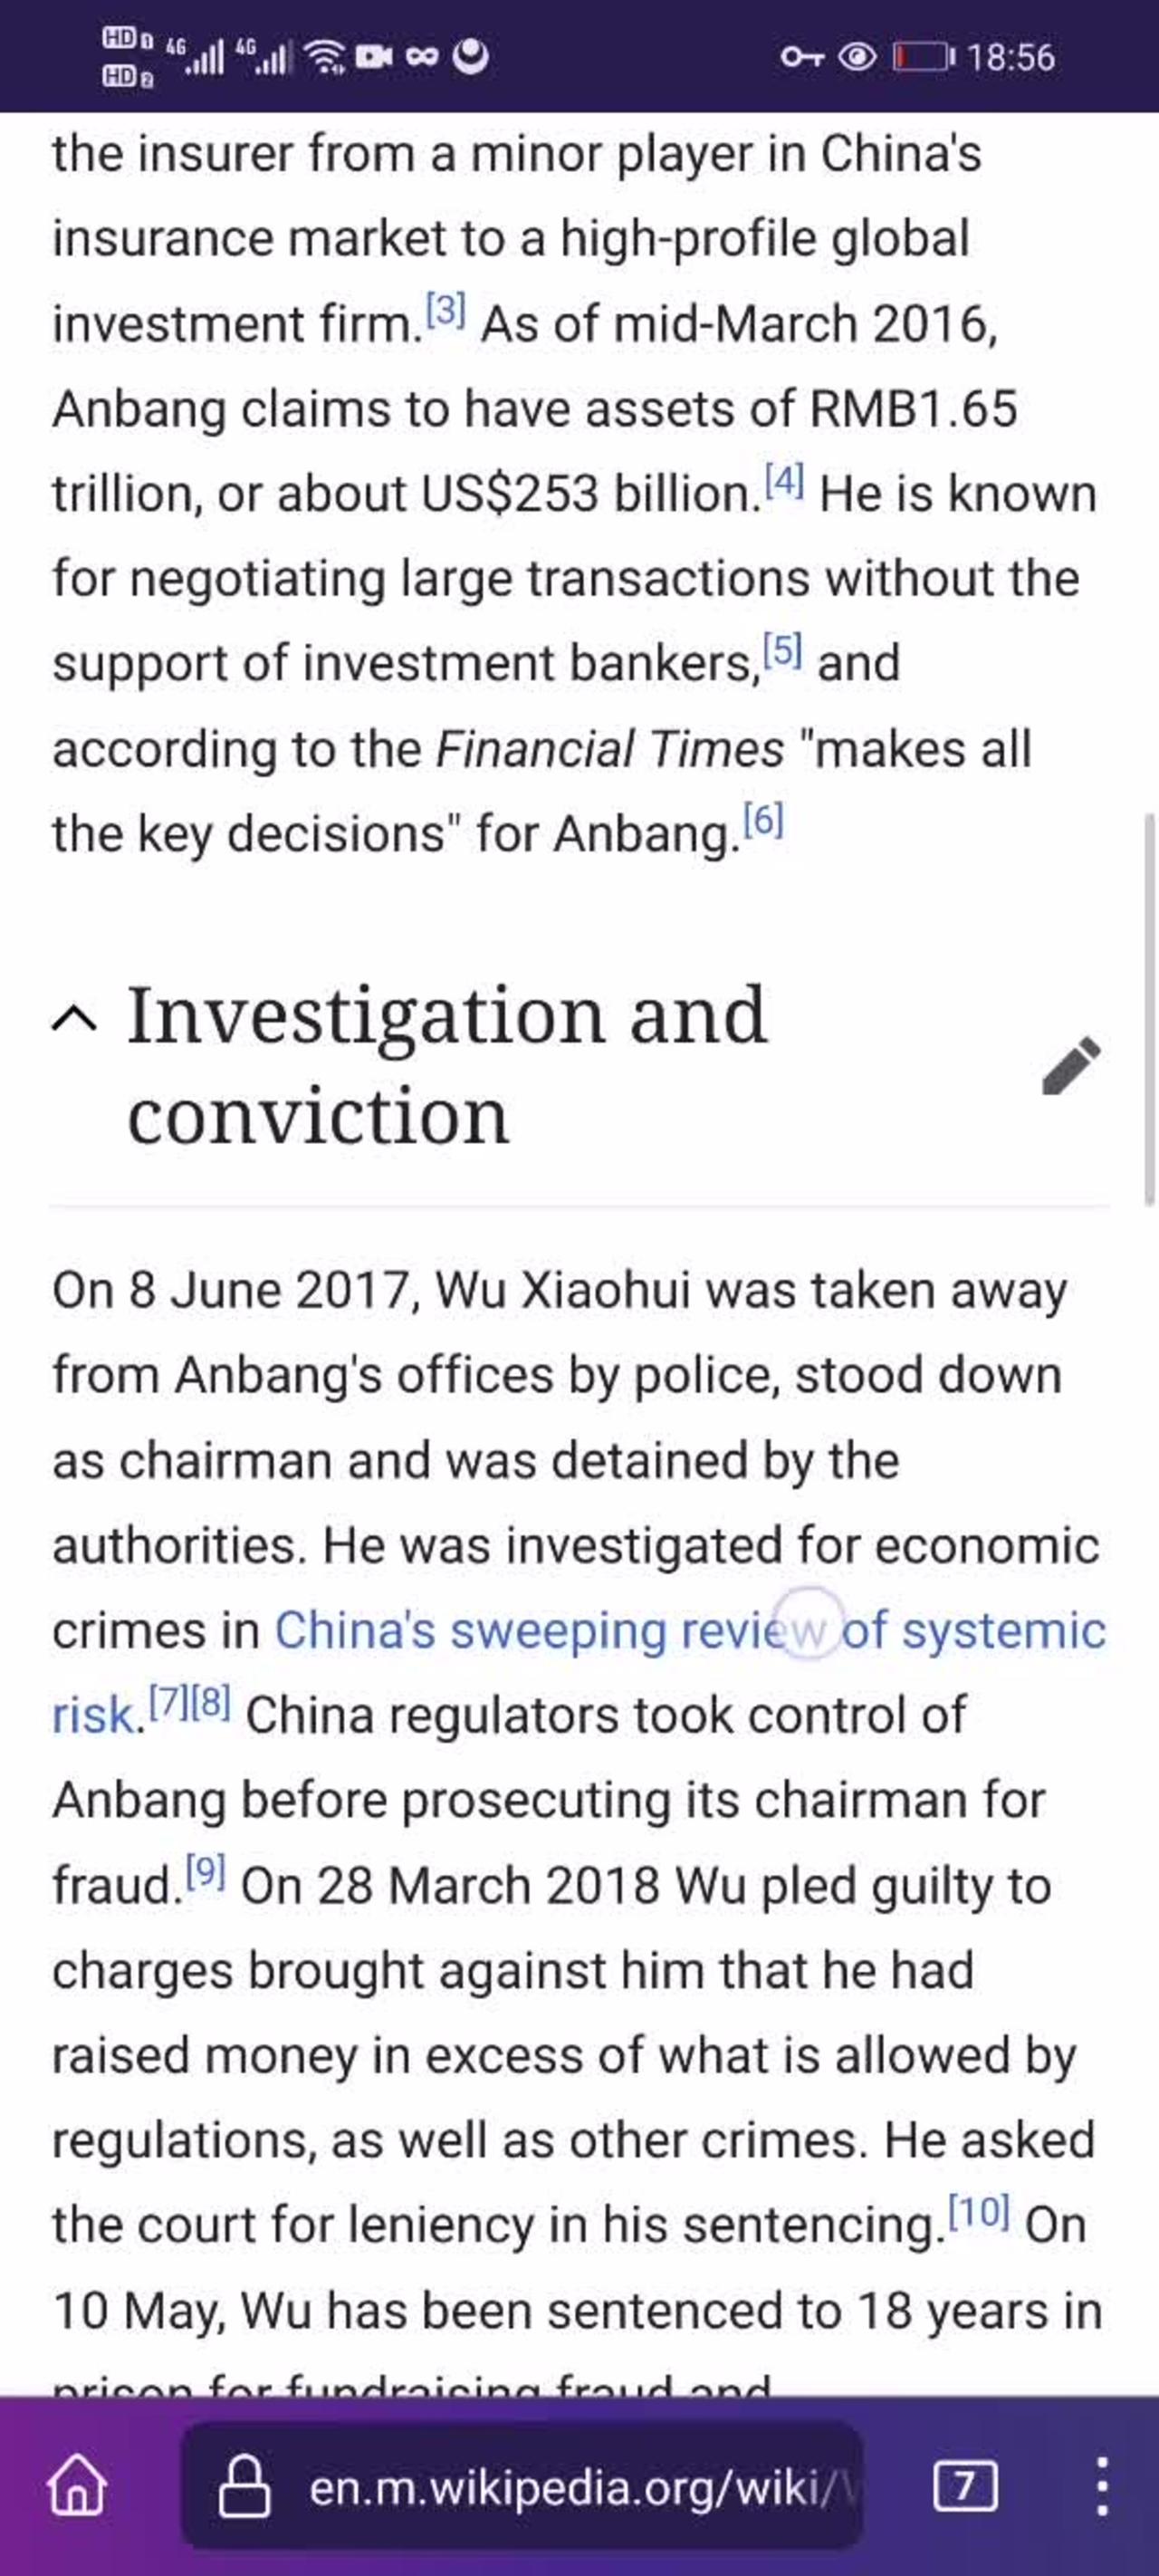 Wu Xiaohui---Deng Xiaoping’s grandson-in-law that has been in jail by Xi Jinping